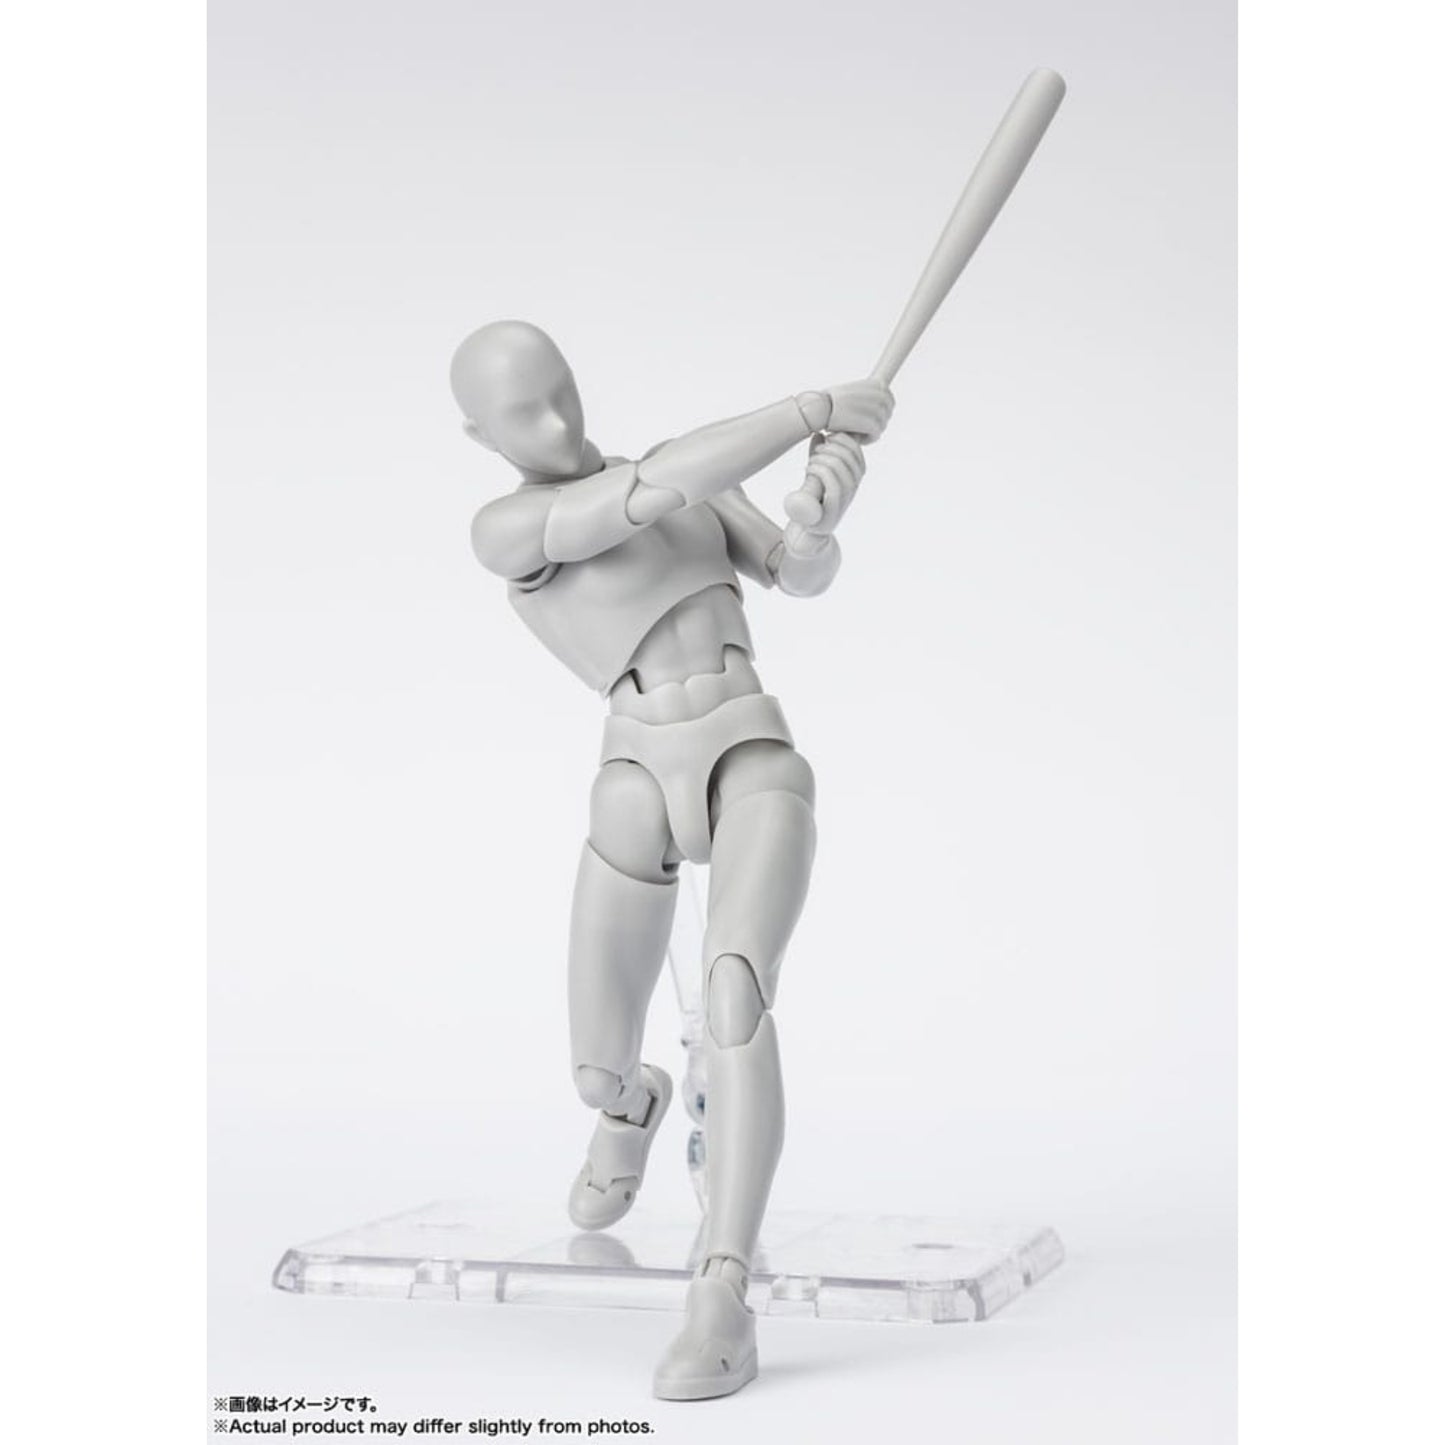 S.H.F. Actionfigur Body-Kun: Sports Edition DX Set (Gray Color Ver.)